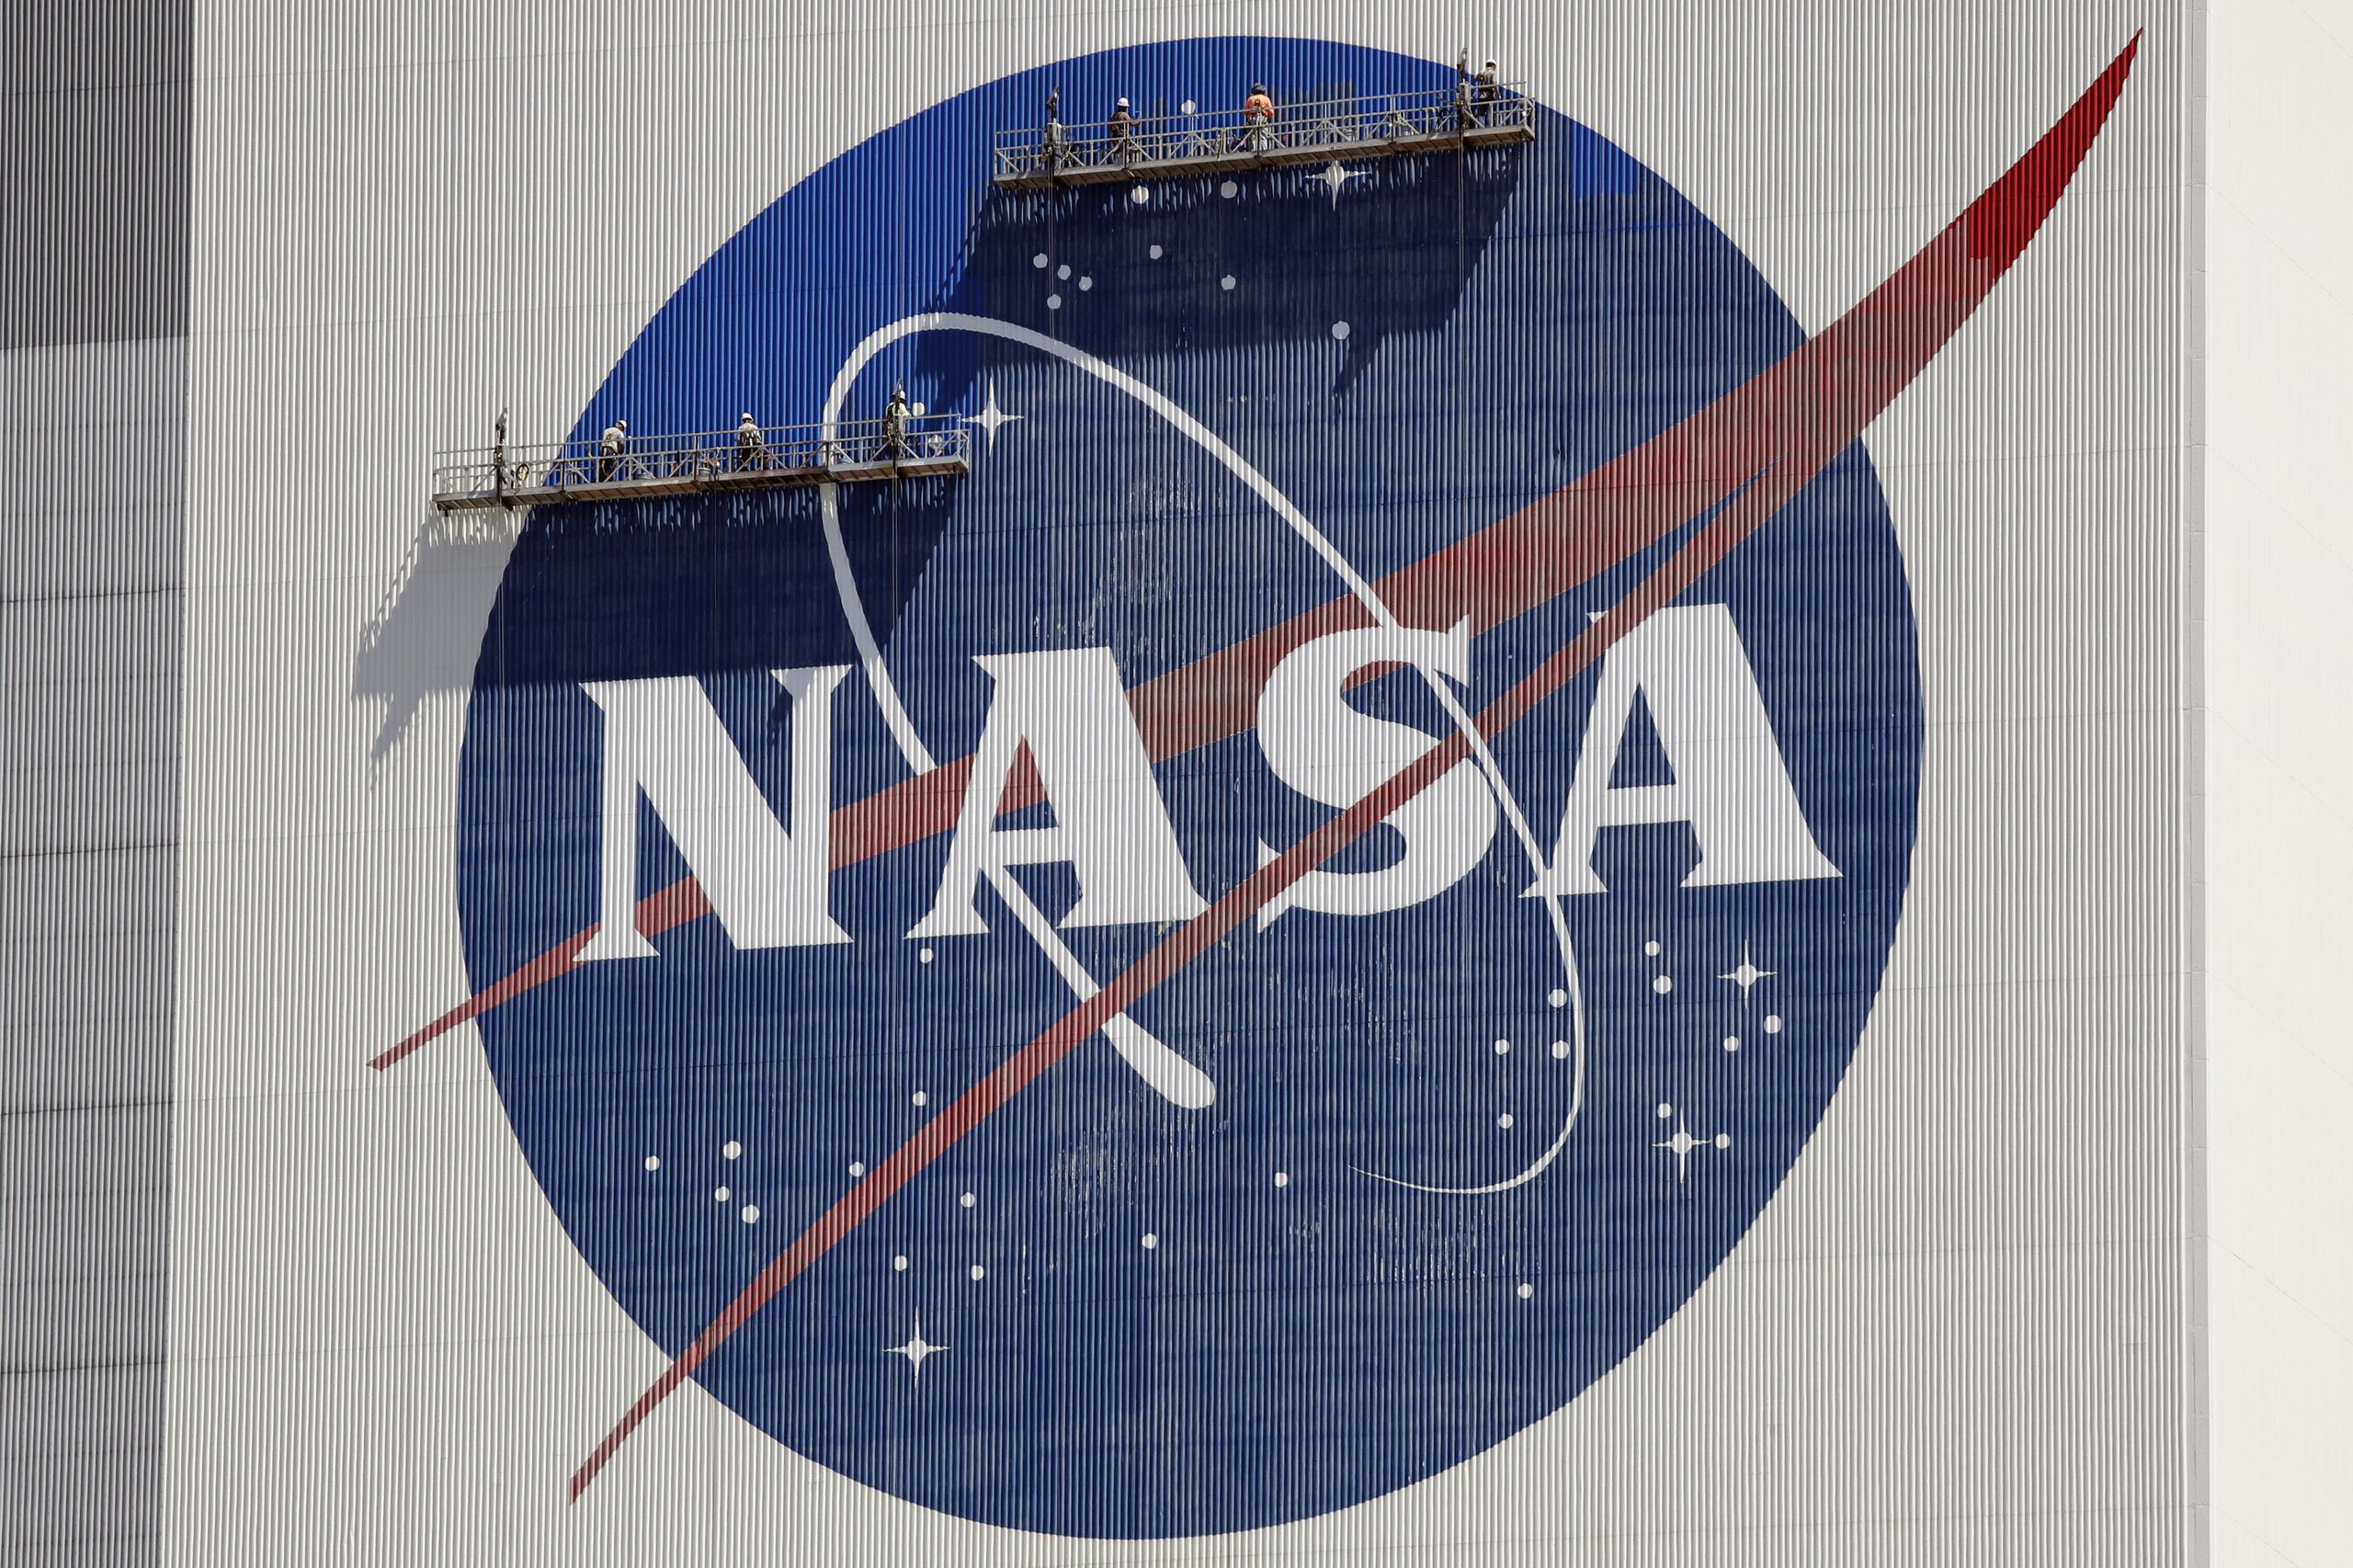 Una teleconferencia para informar de los resultados de la prueba tendrá lugar el próximo martes, avanzó la NASA. (AP Foto/John Raoux, Archivo)